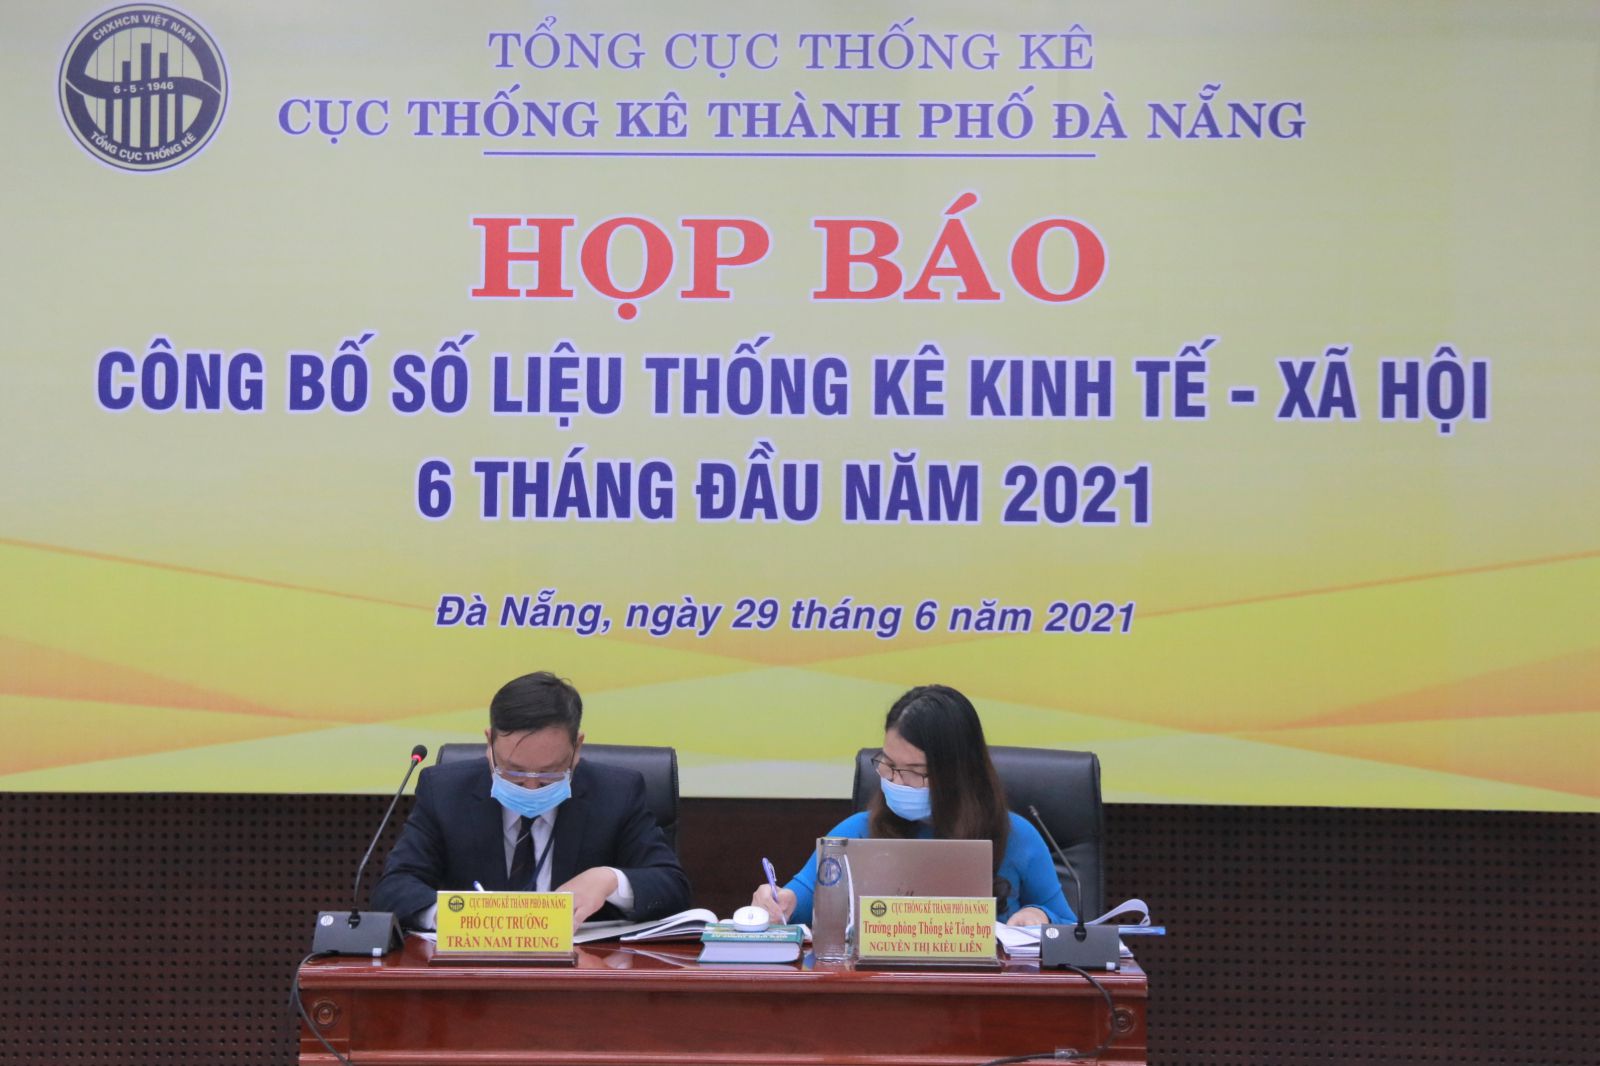 Họp báo về tình hình kinh tế - xã hội thành phố Đà Nẵng 6 tháng đầu năm 202